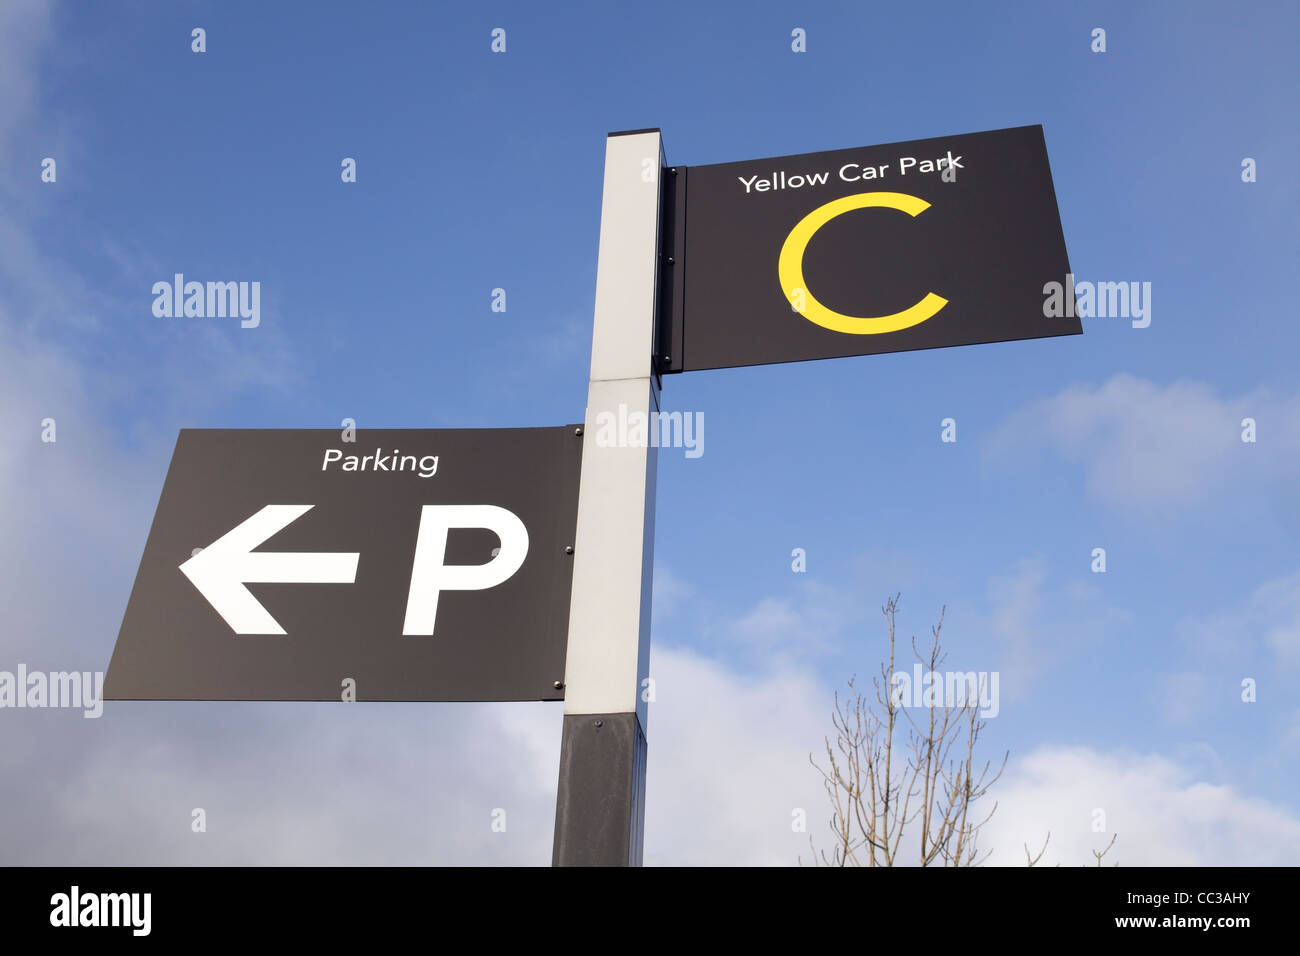 Car park direction sign, UK Stock Photo